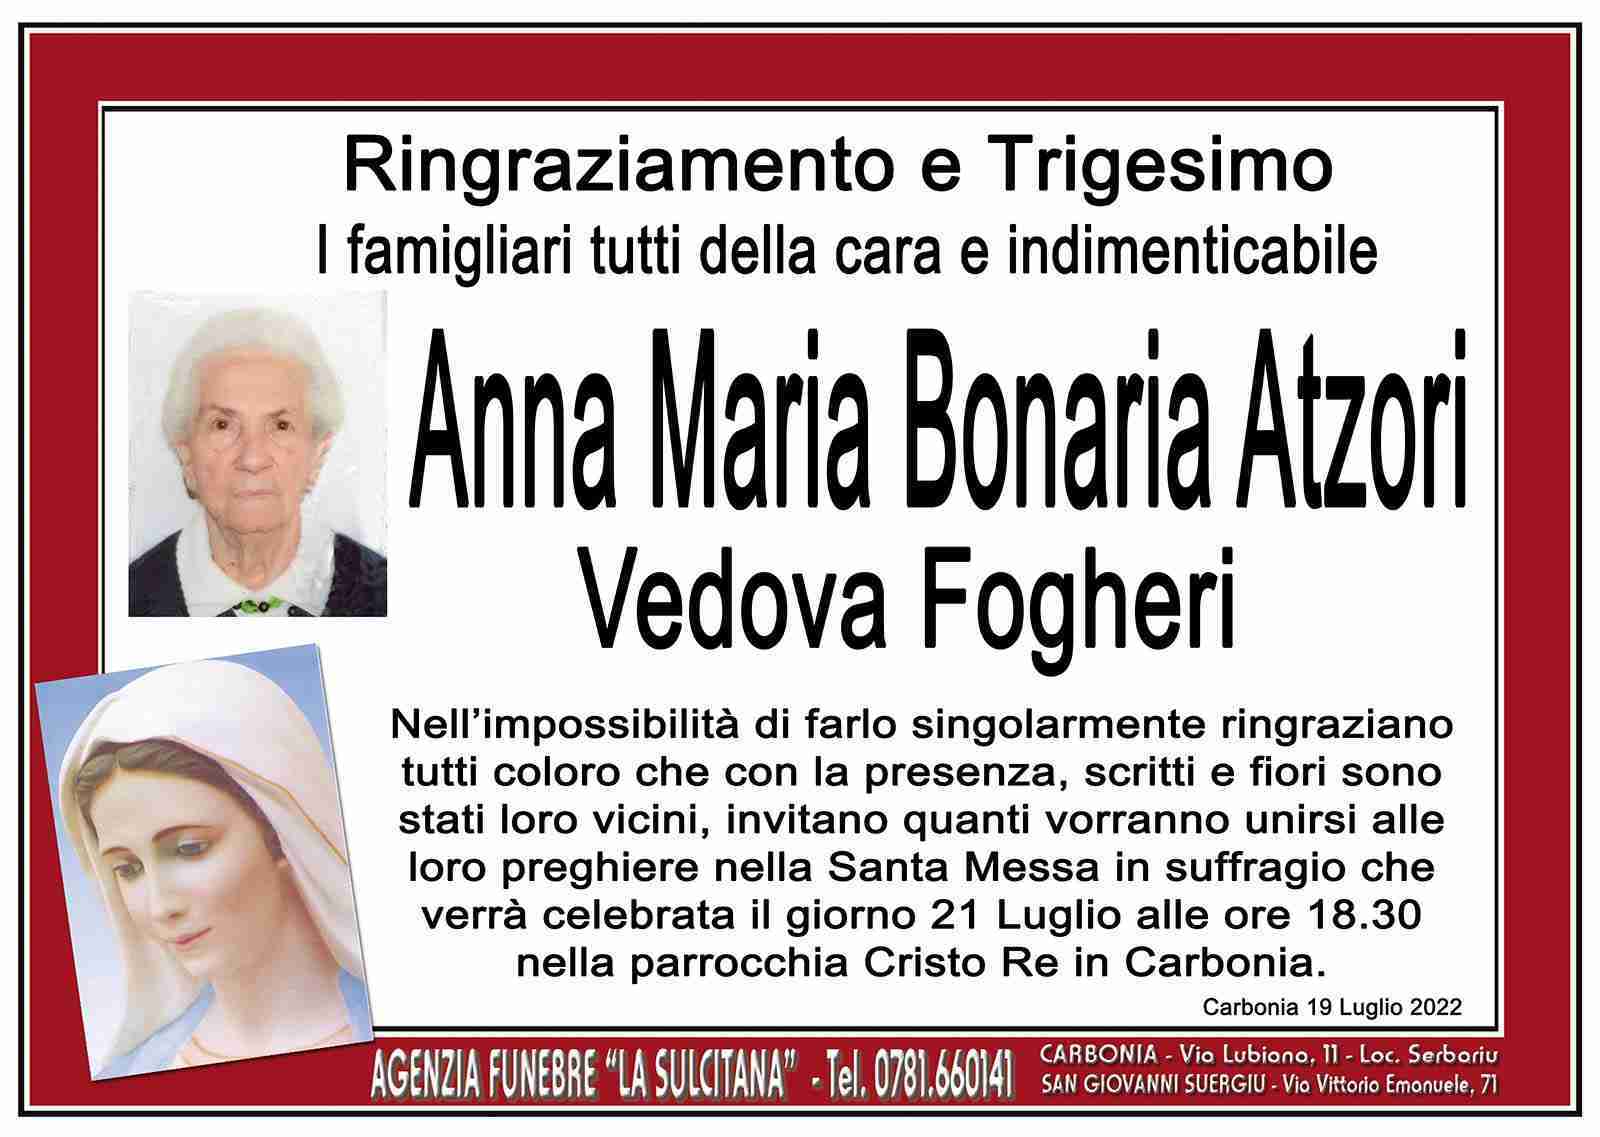 Anna Maria Bonaria Atzori